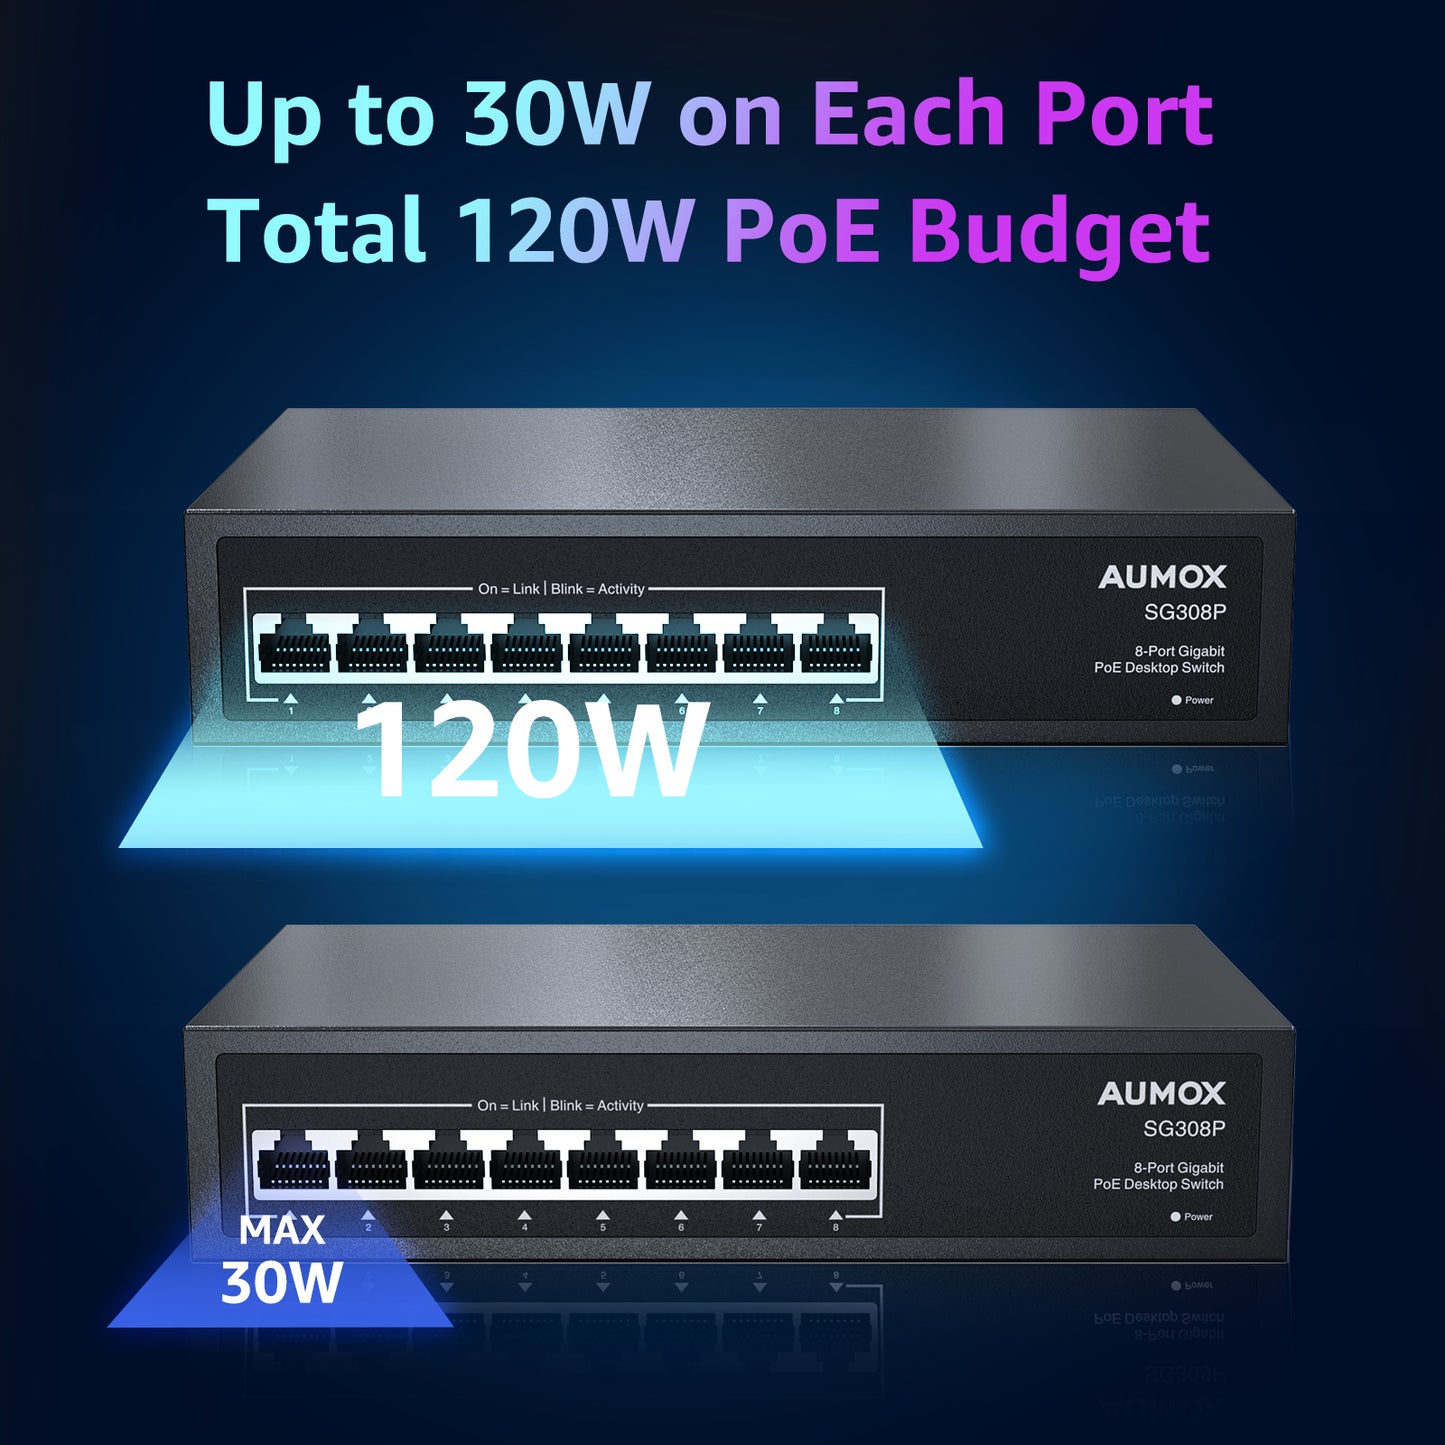 Commutateur PoE Gigabit AUMOX 8 ports 120W (SG308P)